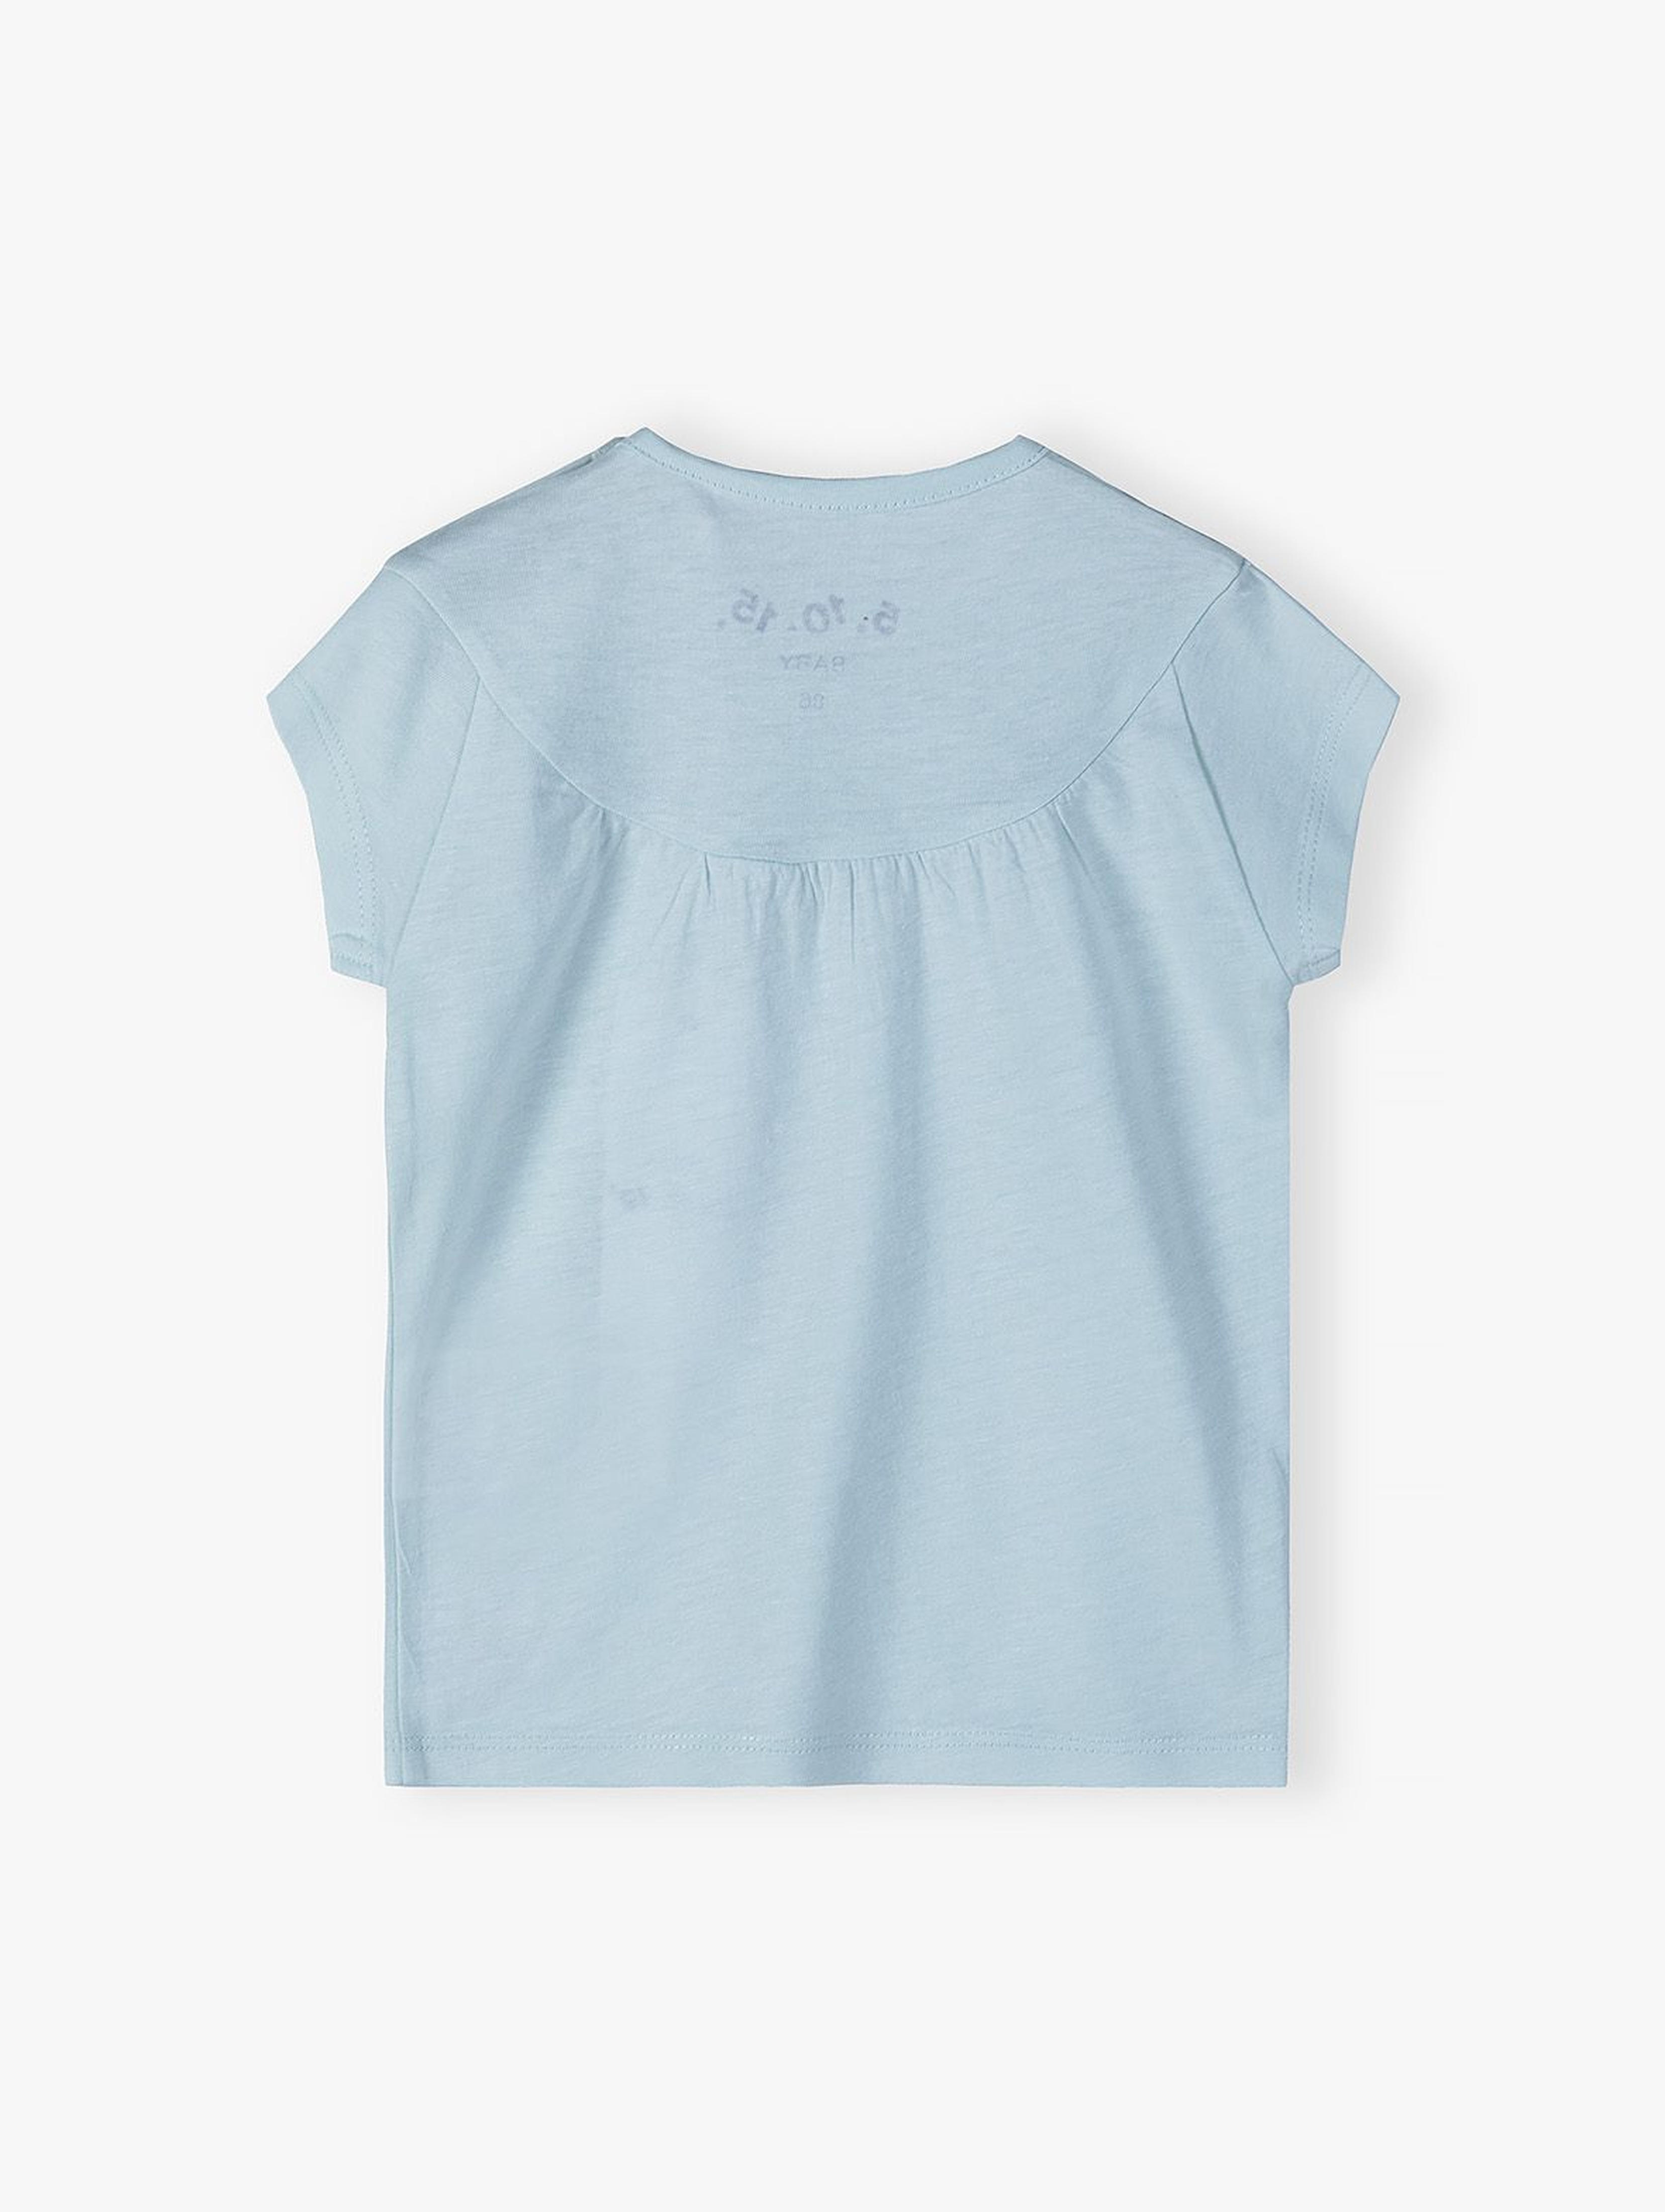 Dzianinowa bluzka niemowlęca z krótkim rękawem